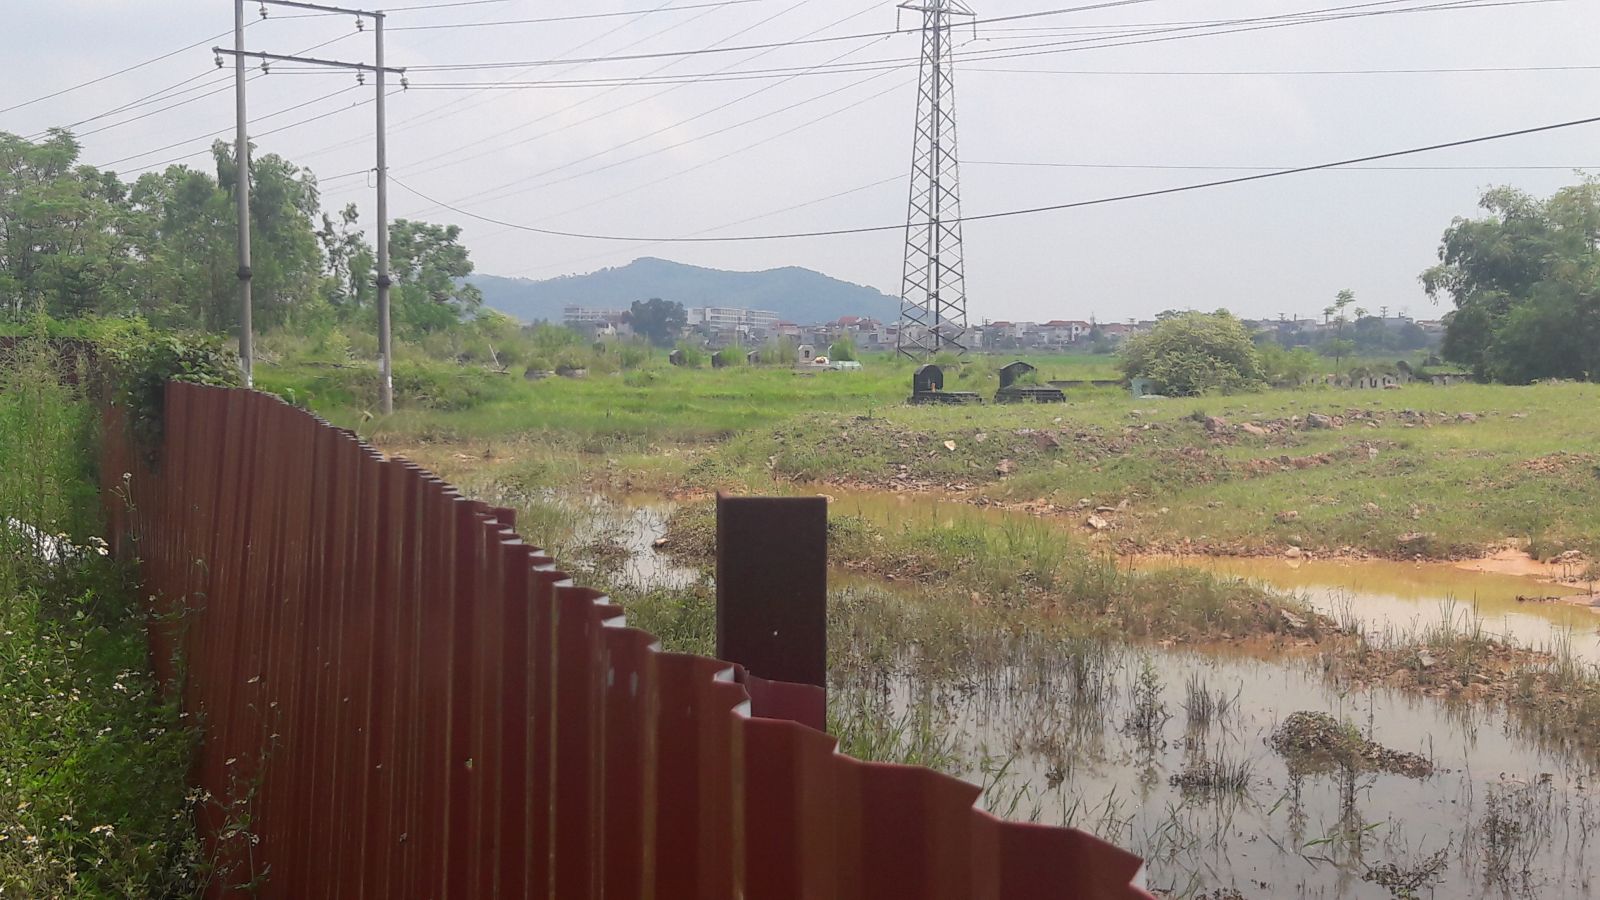 UBND huyện Việt Yên đã tổ chức 2 đợt cưỡng chế thu hồi đất, sau đó CĐT rào tôn quanh Dự án